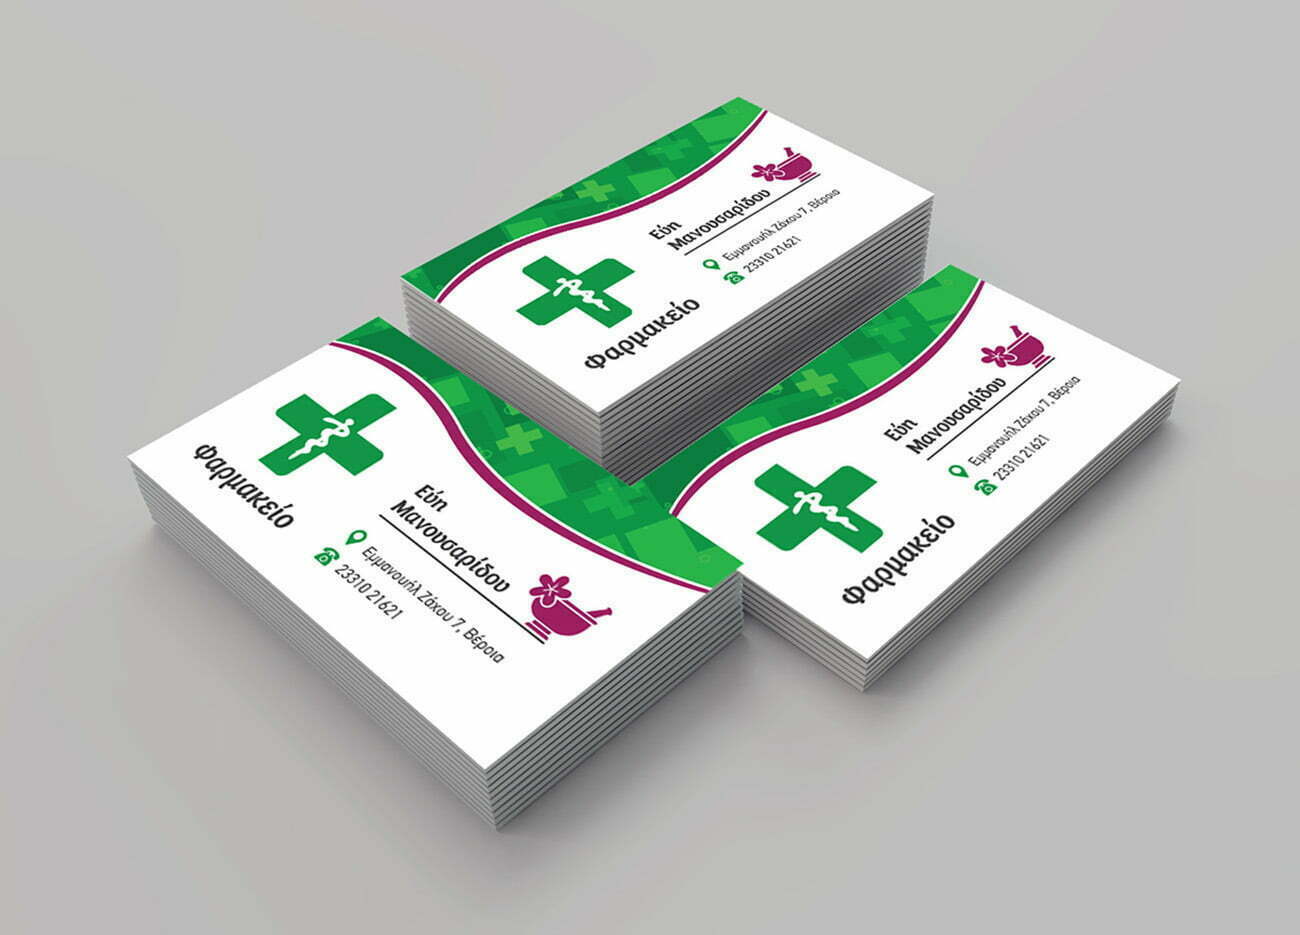 Σχεδιασμός επαγγελματικής κάρτας φαρμακείου Ευαγγελία Μανουσαρίδου